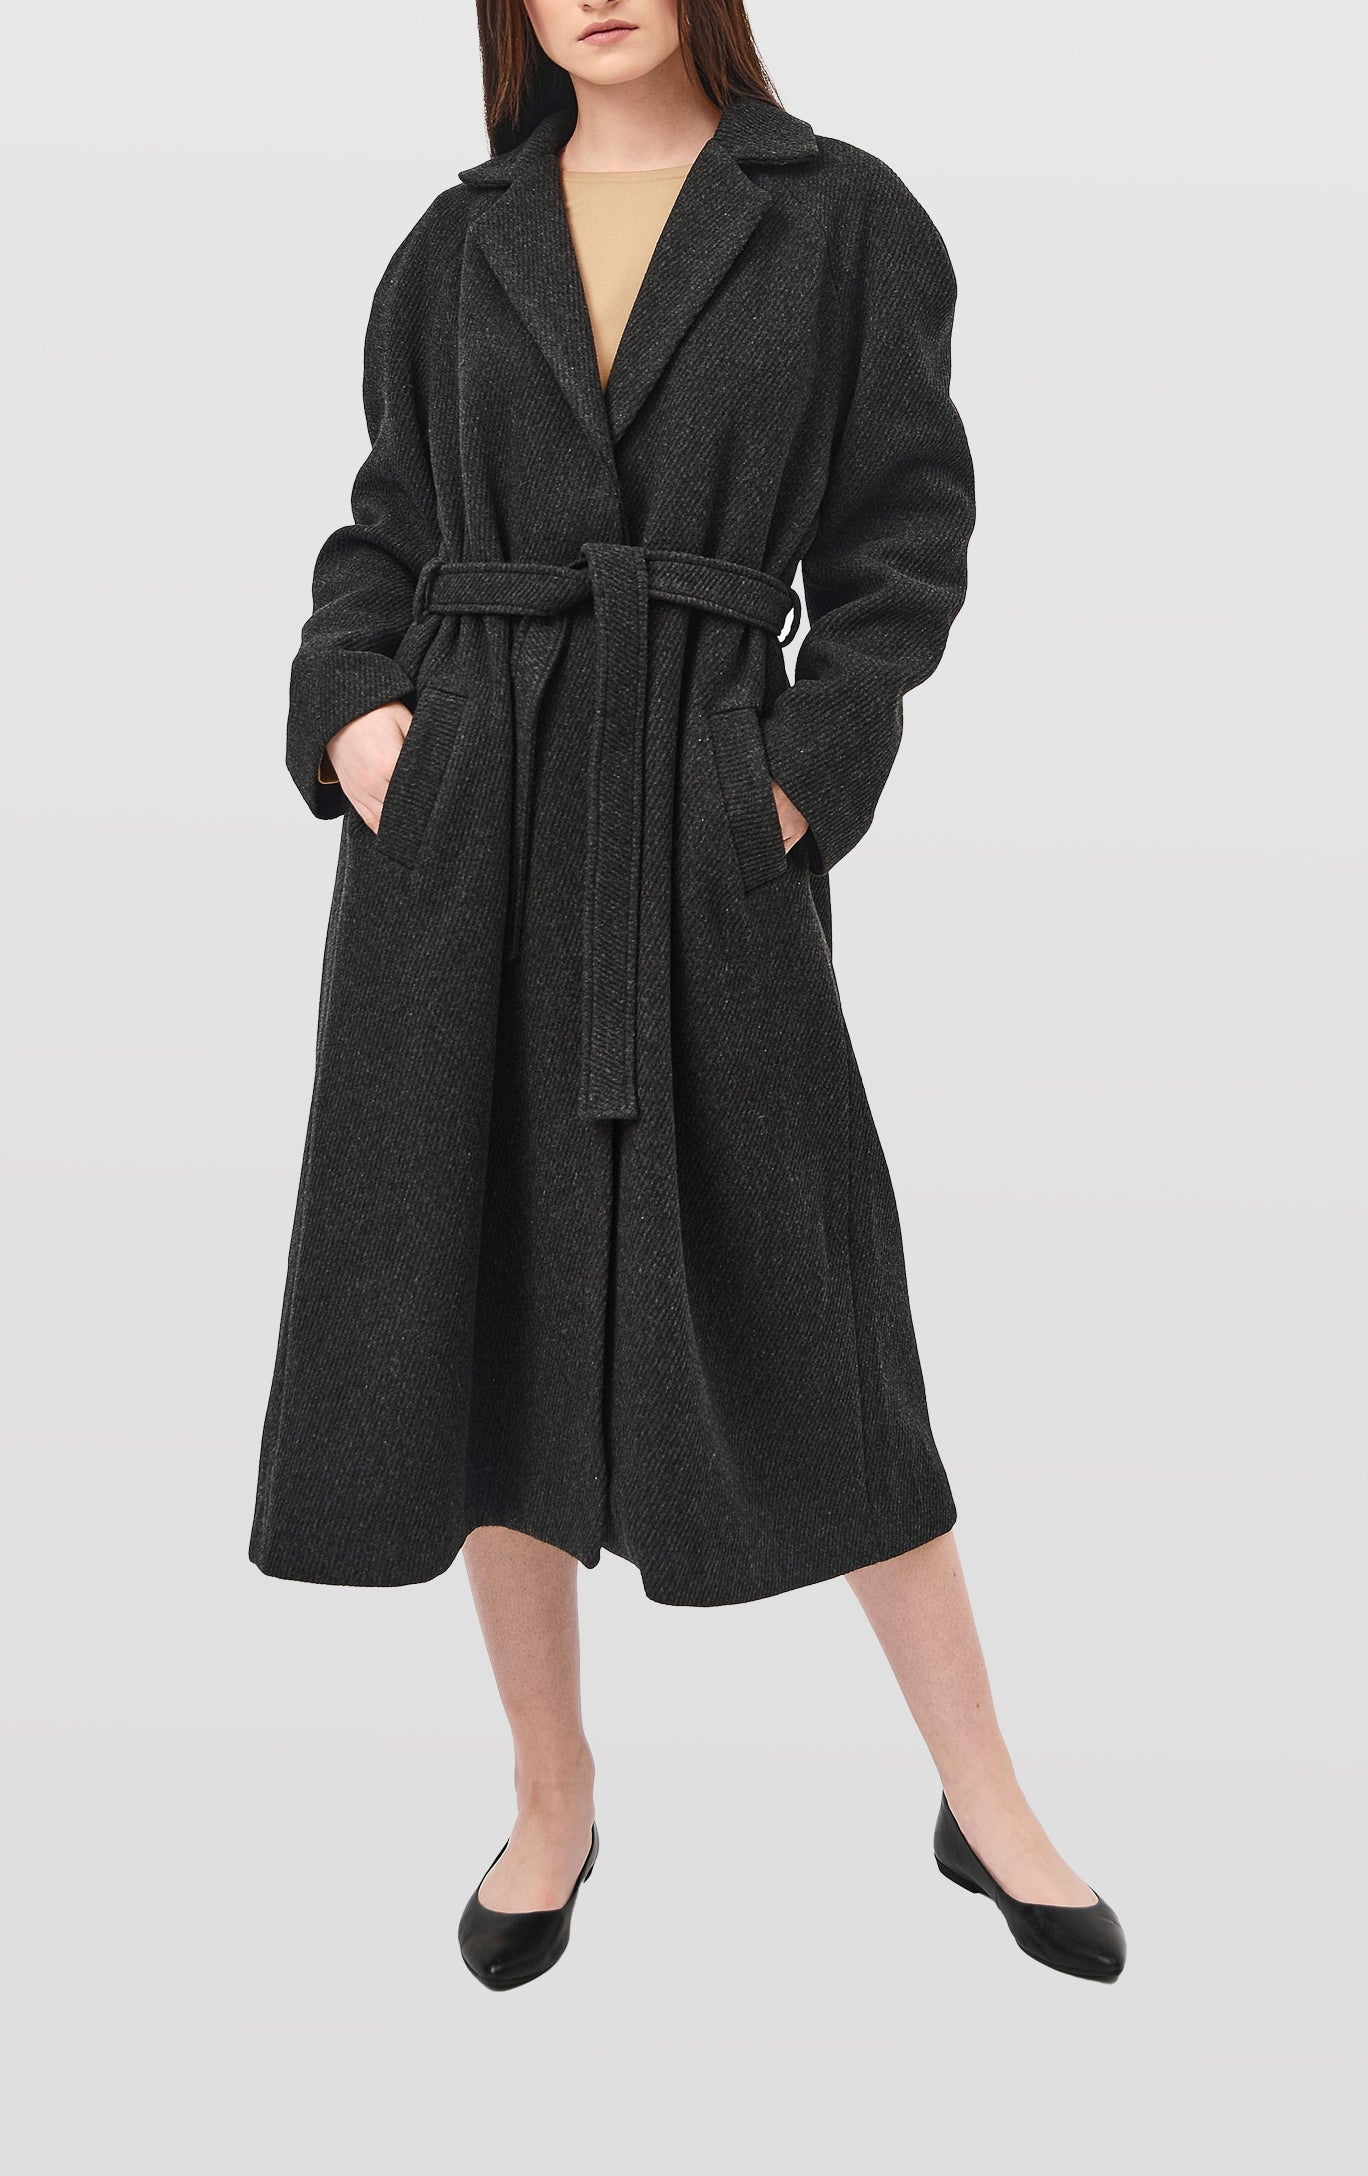 Oversized belted coat